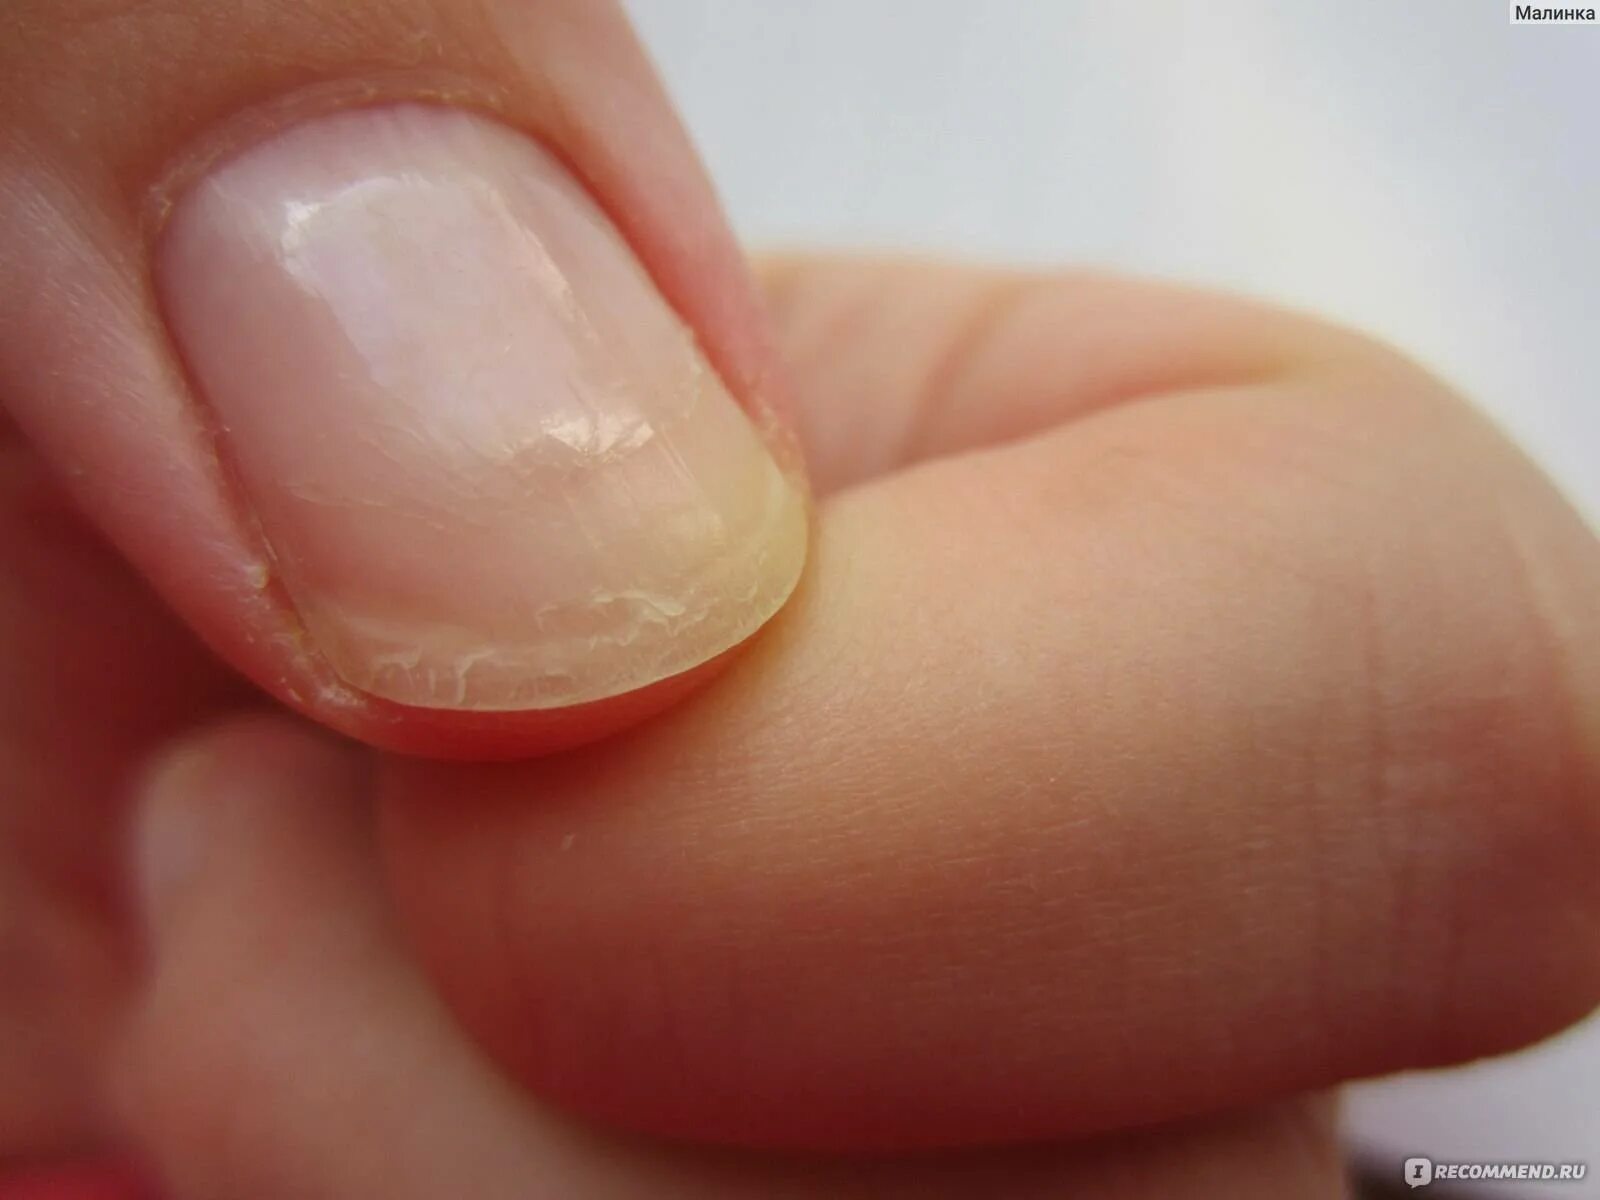 Ногти слоятся что делать в домашних условиях. Онихошизис ногтевой пластины.